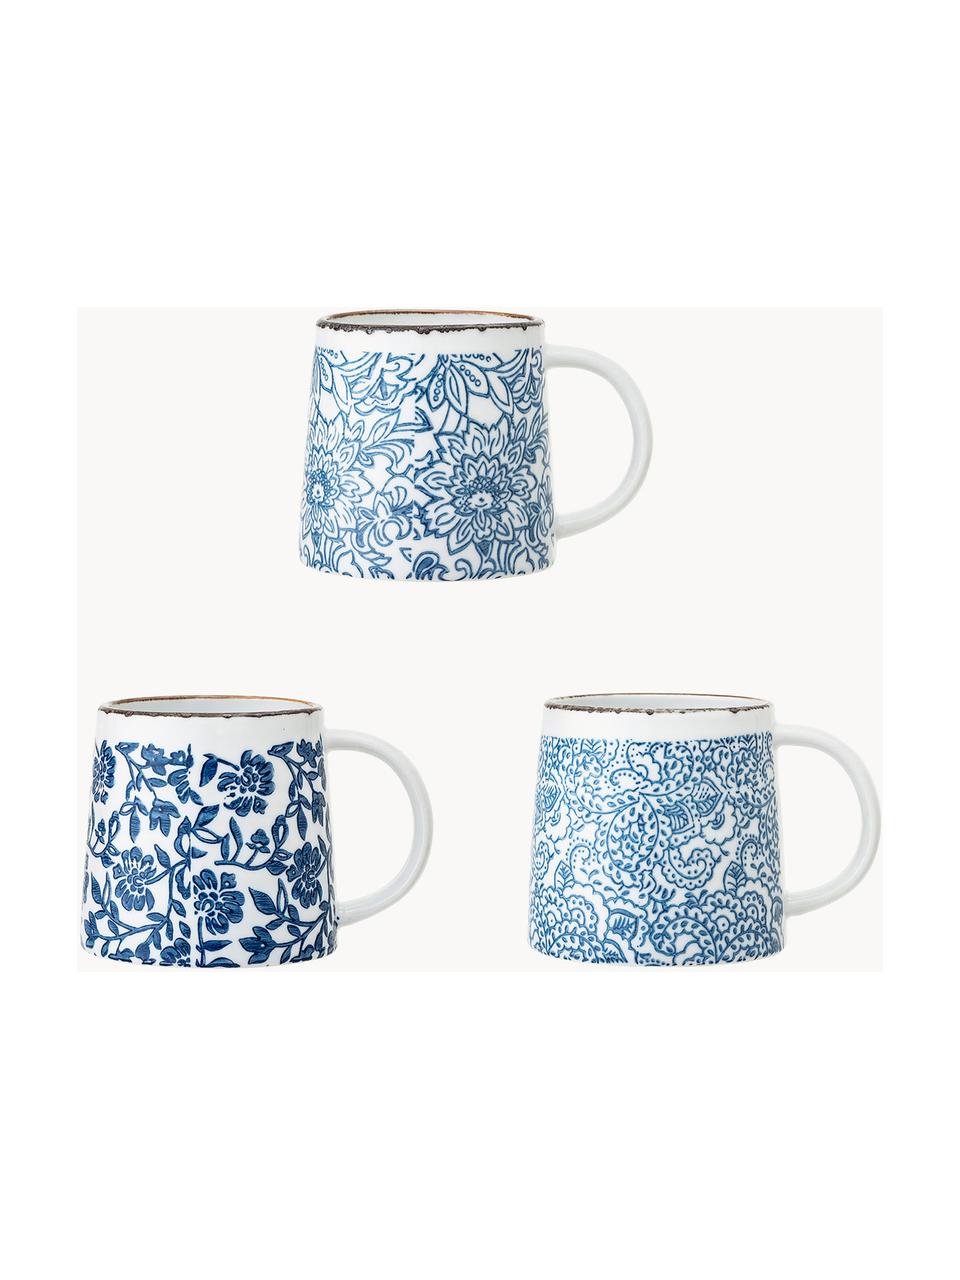 Handgemachte Tassen Molly mit Blumenmuster, 3er-Set, Steingut, Weiß, Blautöne, Ø 10 x H 10 cm, 400 ml